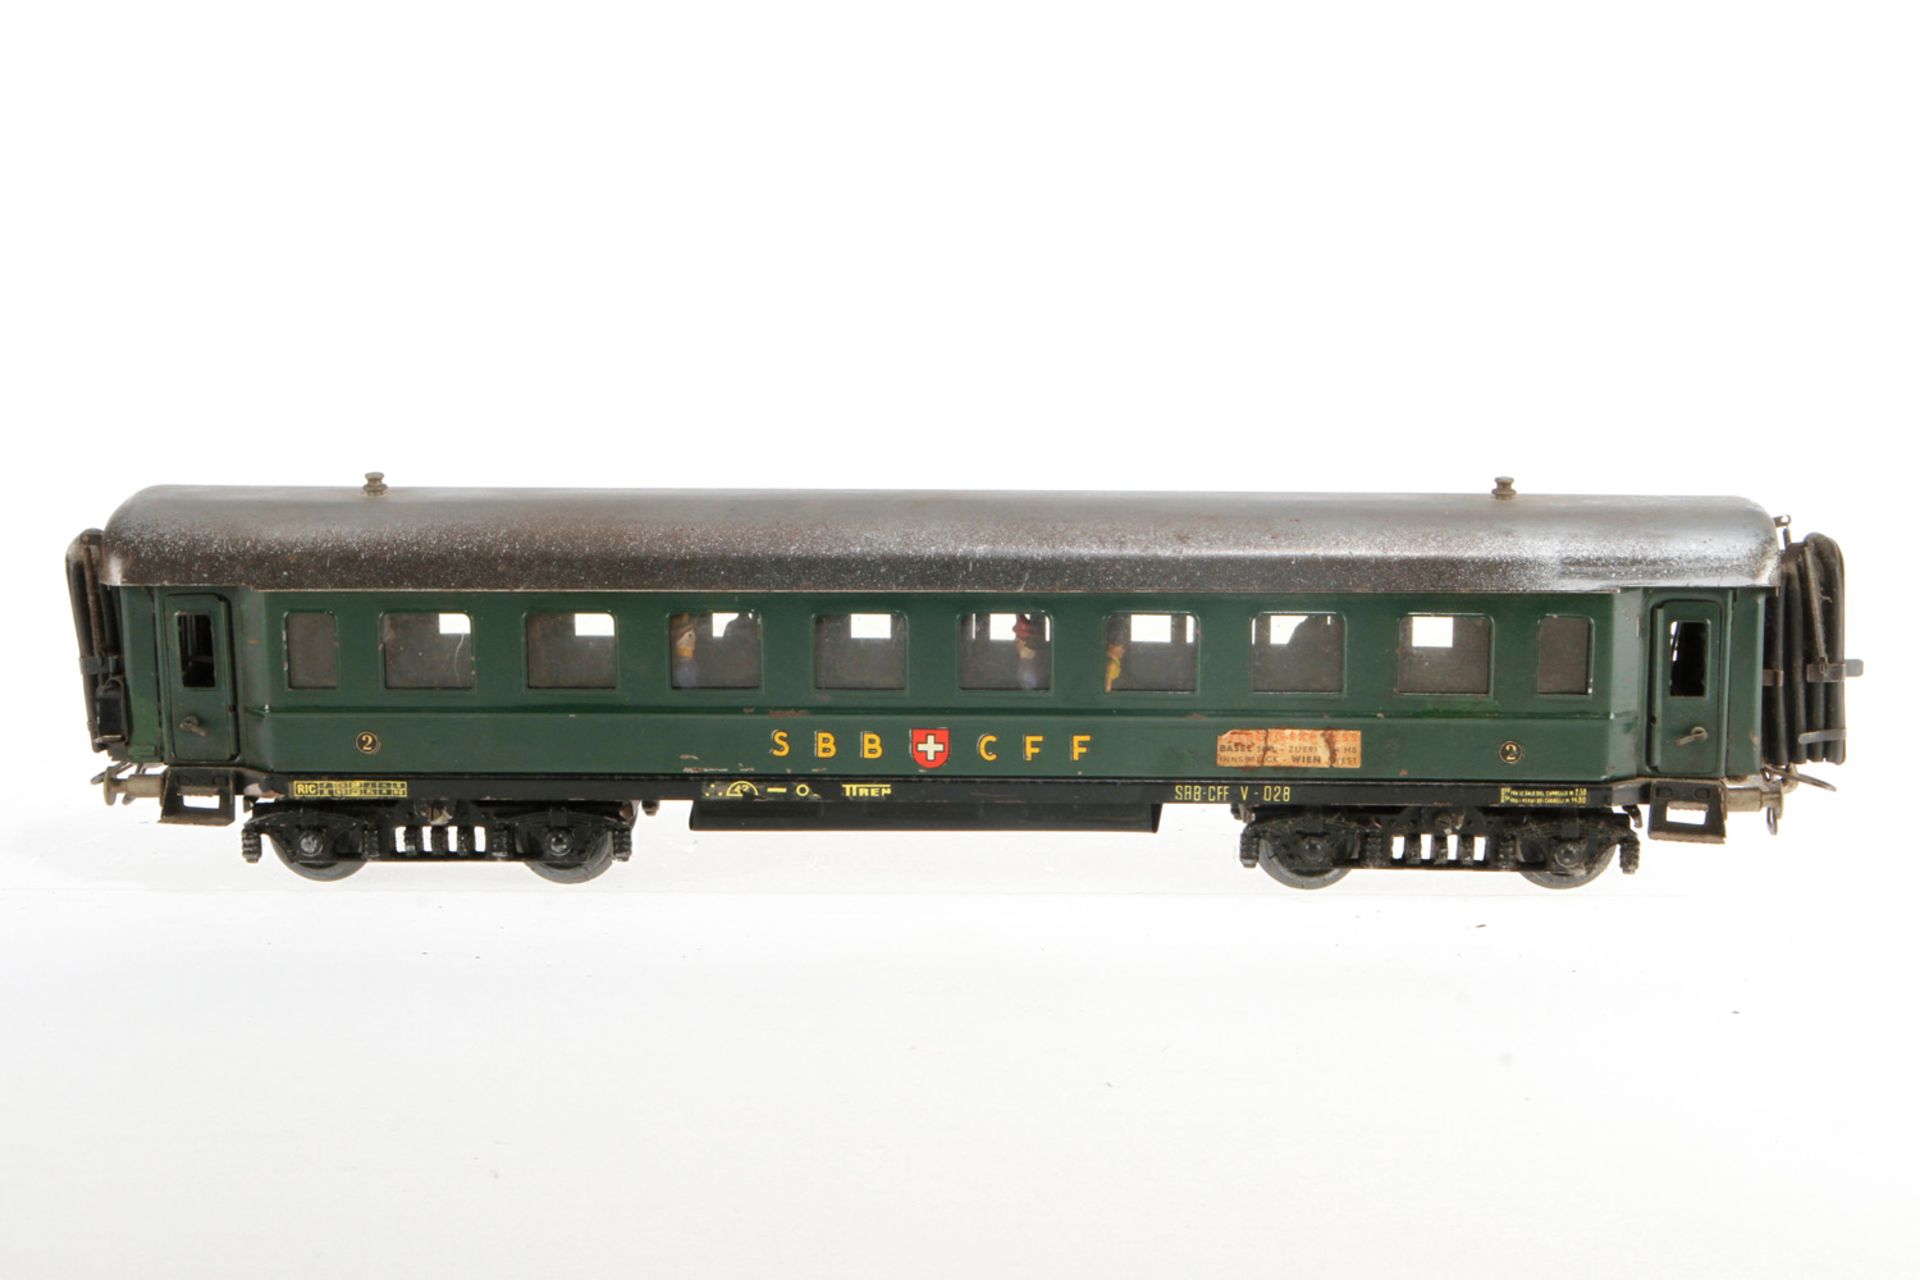 Elettren schweizer Personenwagen V-028, S 0, grün, 2. Klasse, mit Inneneinrichtung und